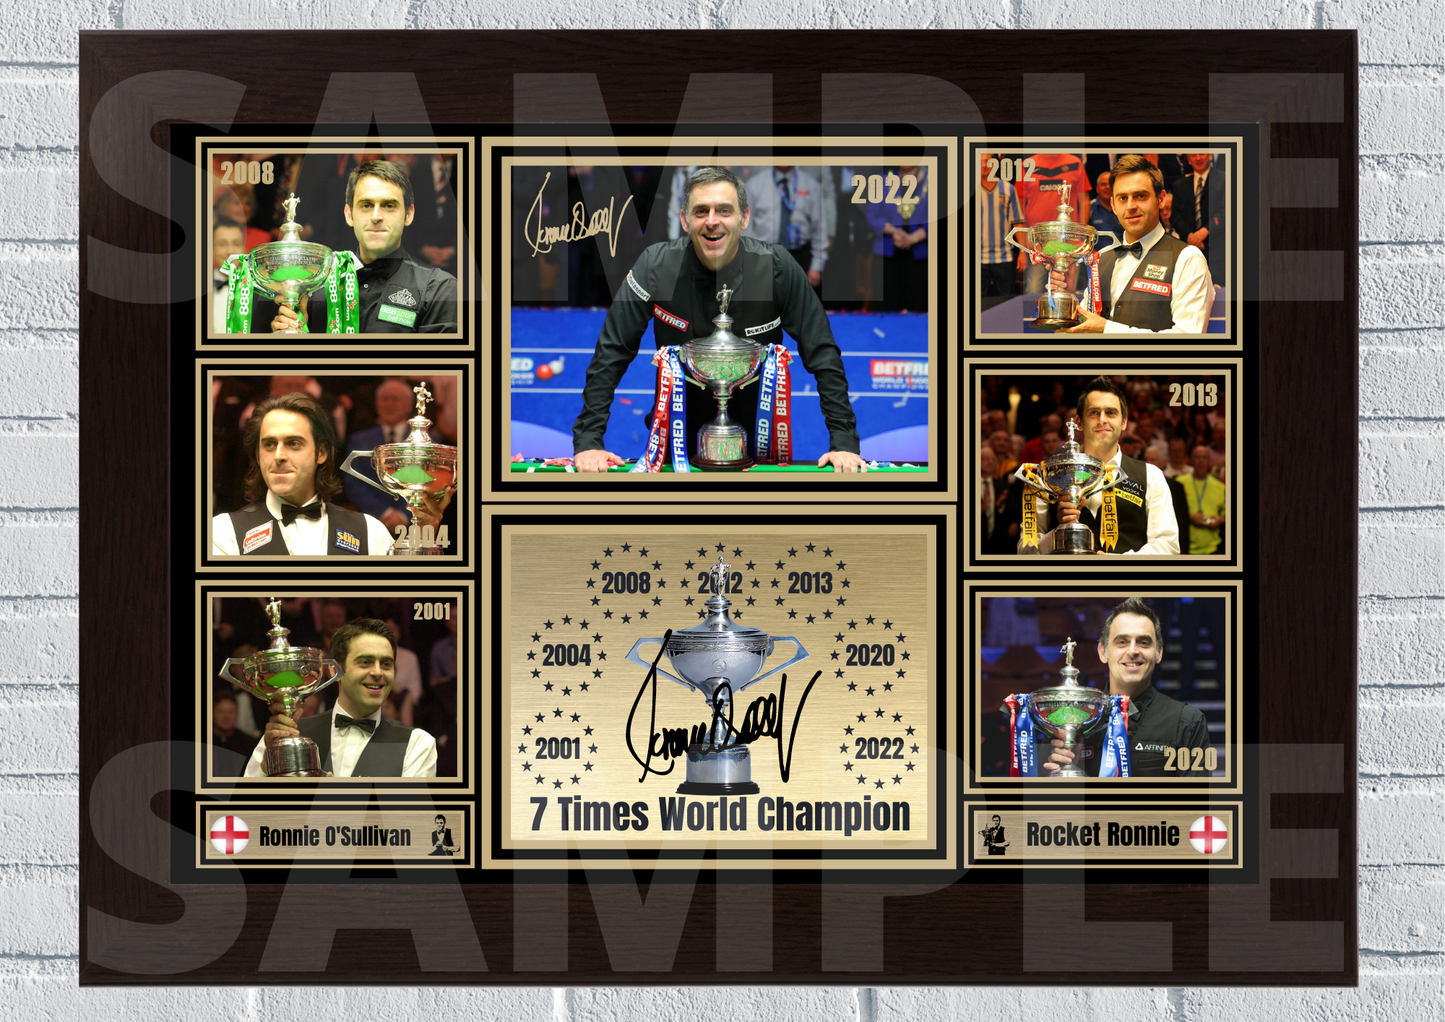 Rocket Ronnie O'Sullivan 7 Times World champion - Snooker memorabilia/collectable #85